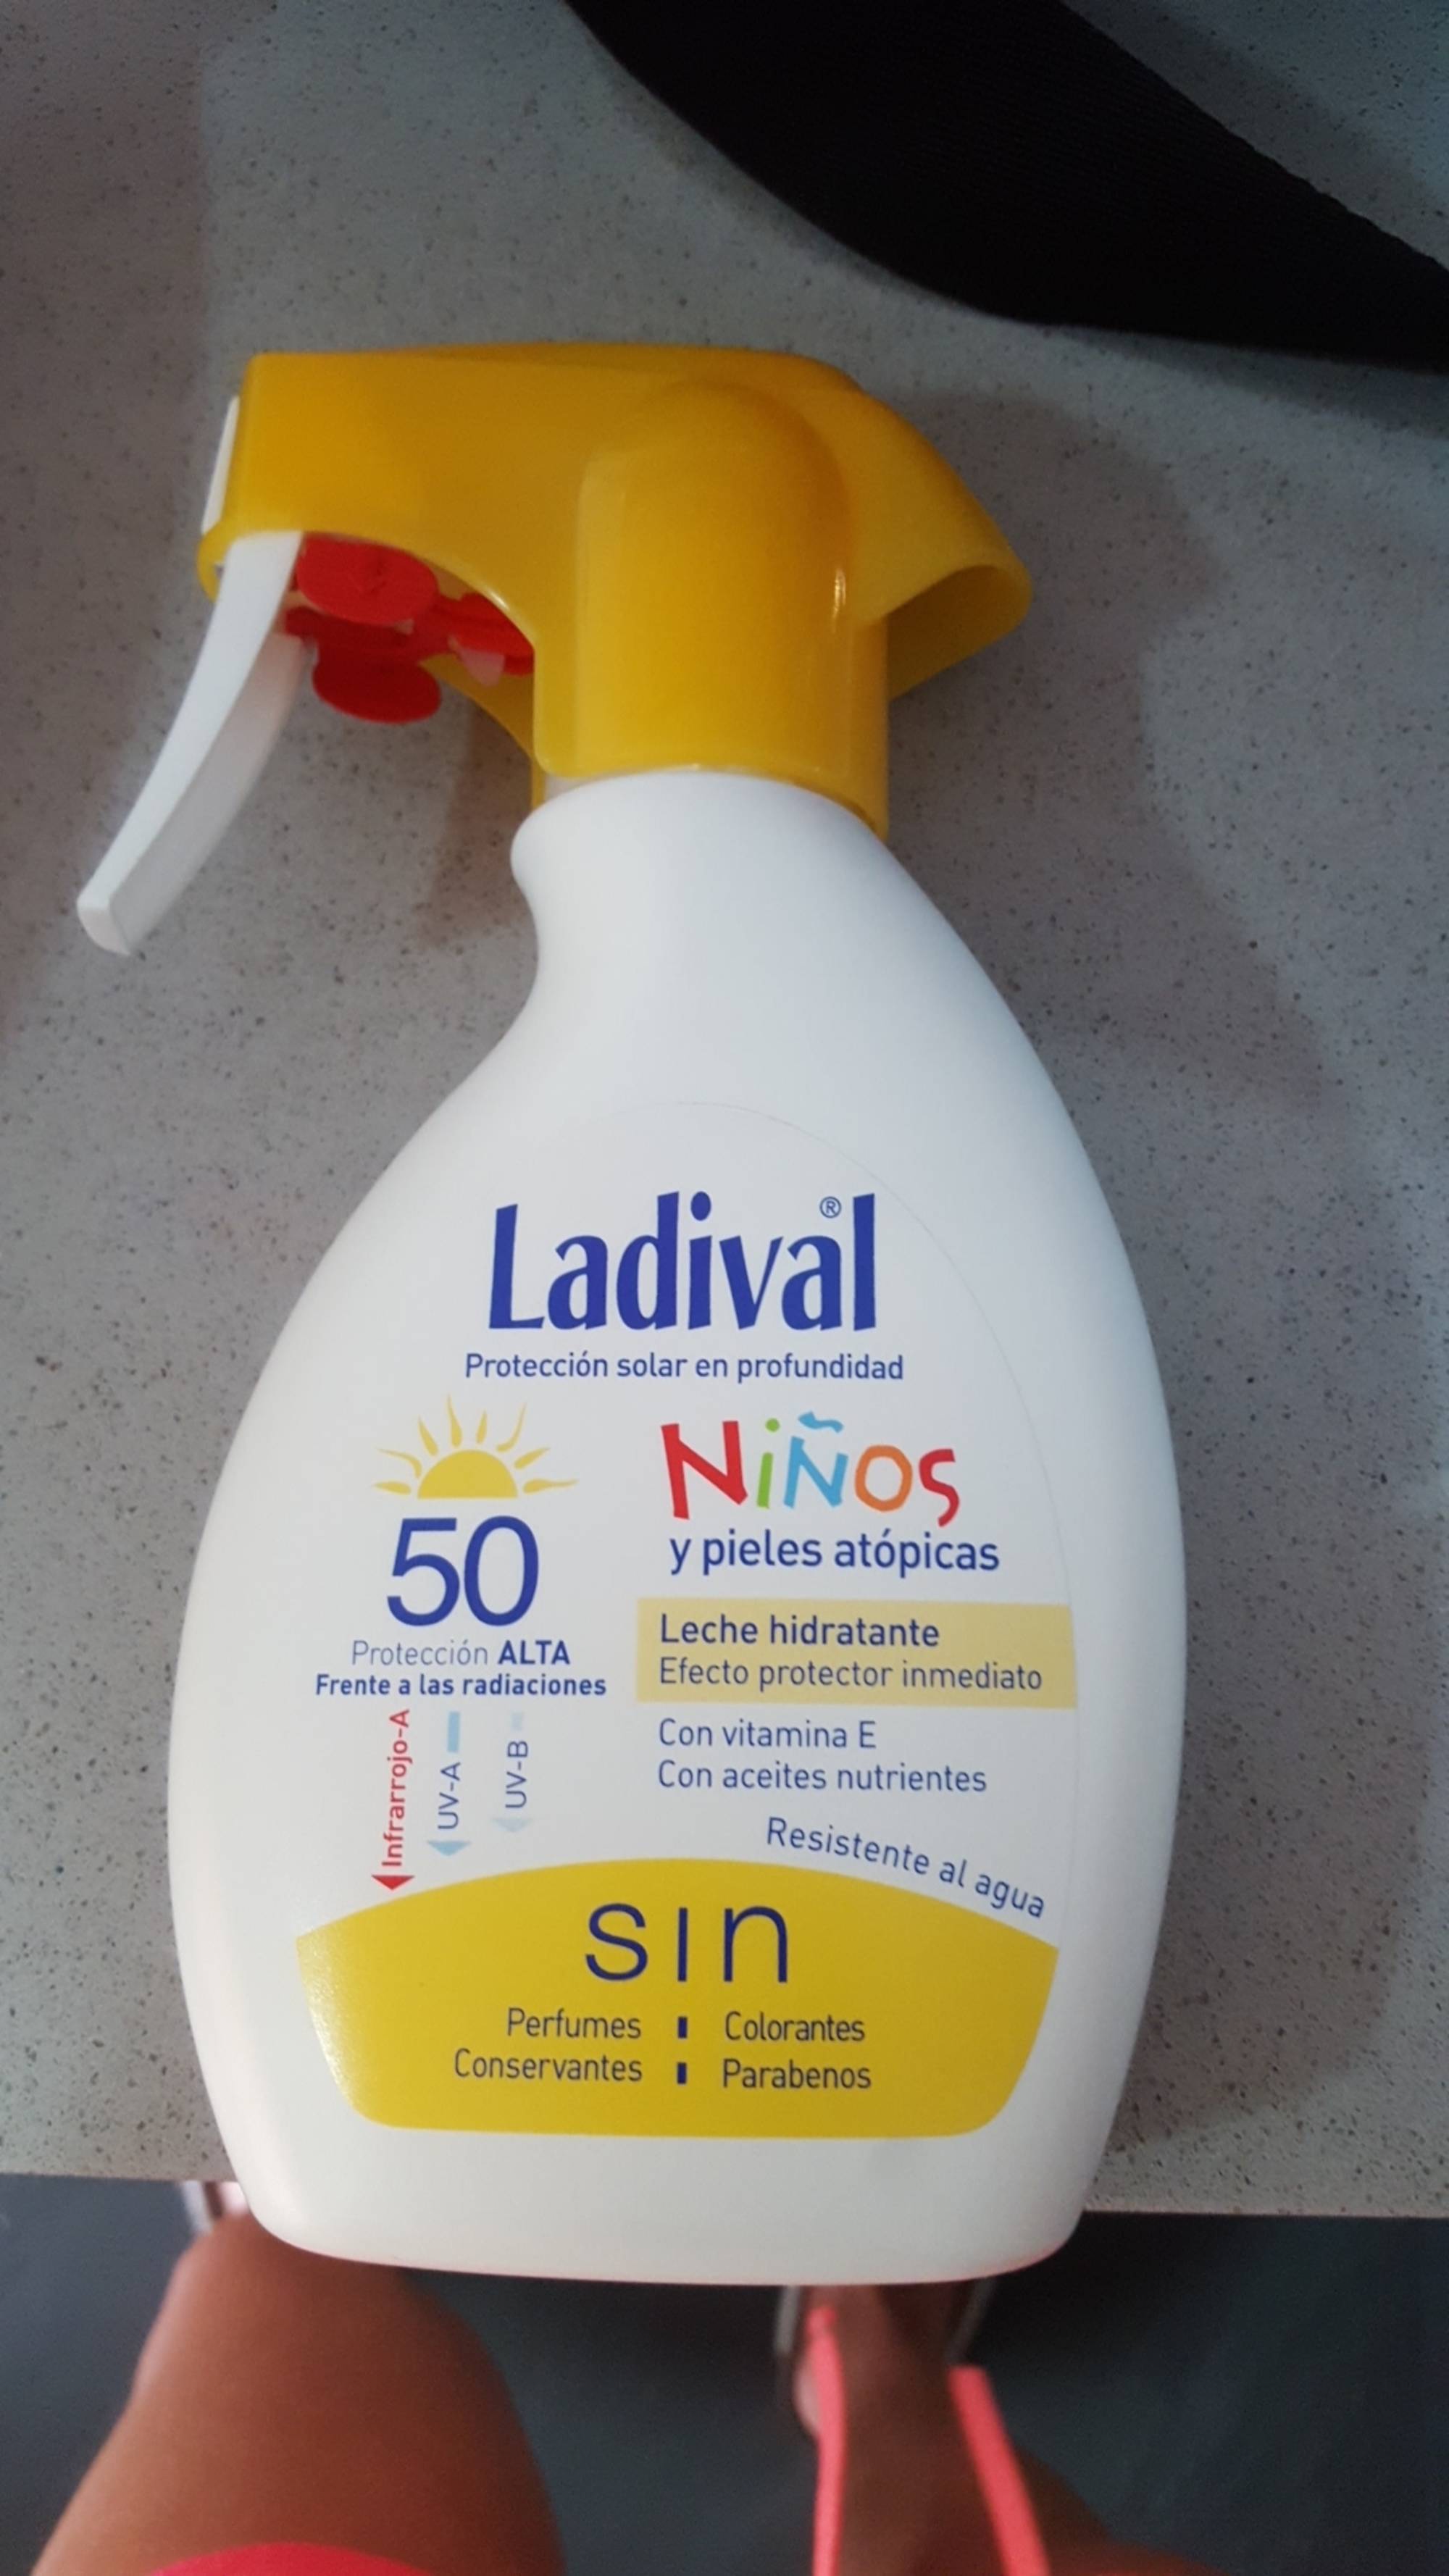 LADIVAL - Ninos - Proteccion solar en profundidad 50